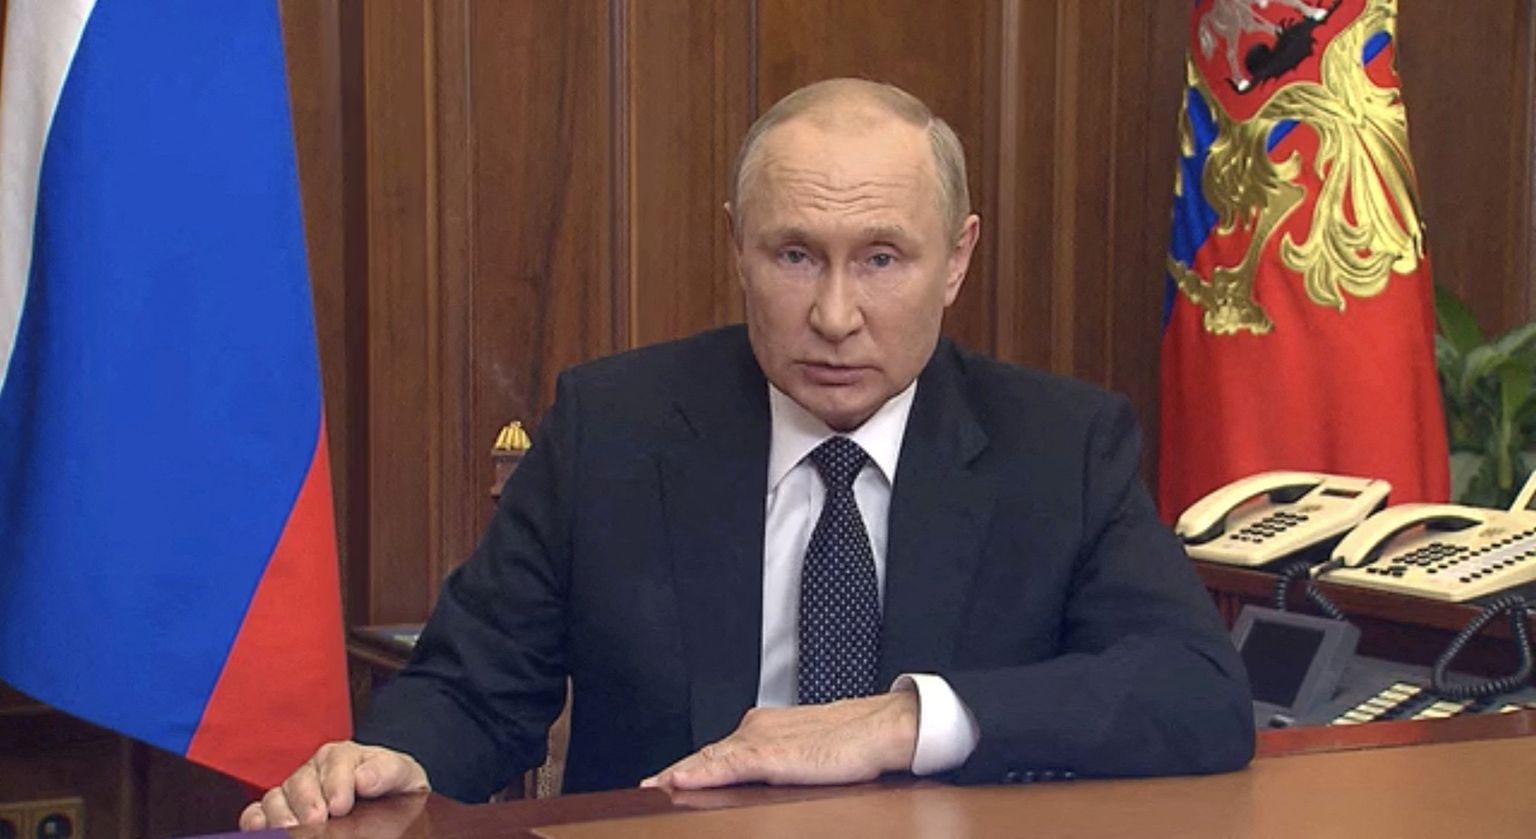 Venemaa president Vladimir Putin oma ähvardavas kõnes